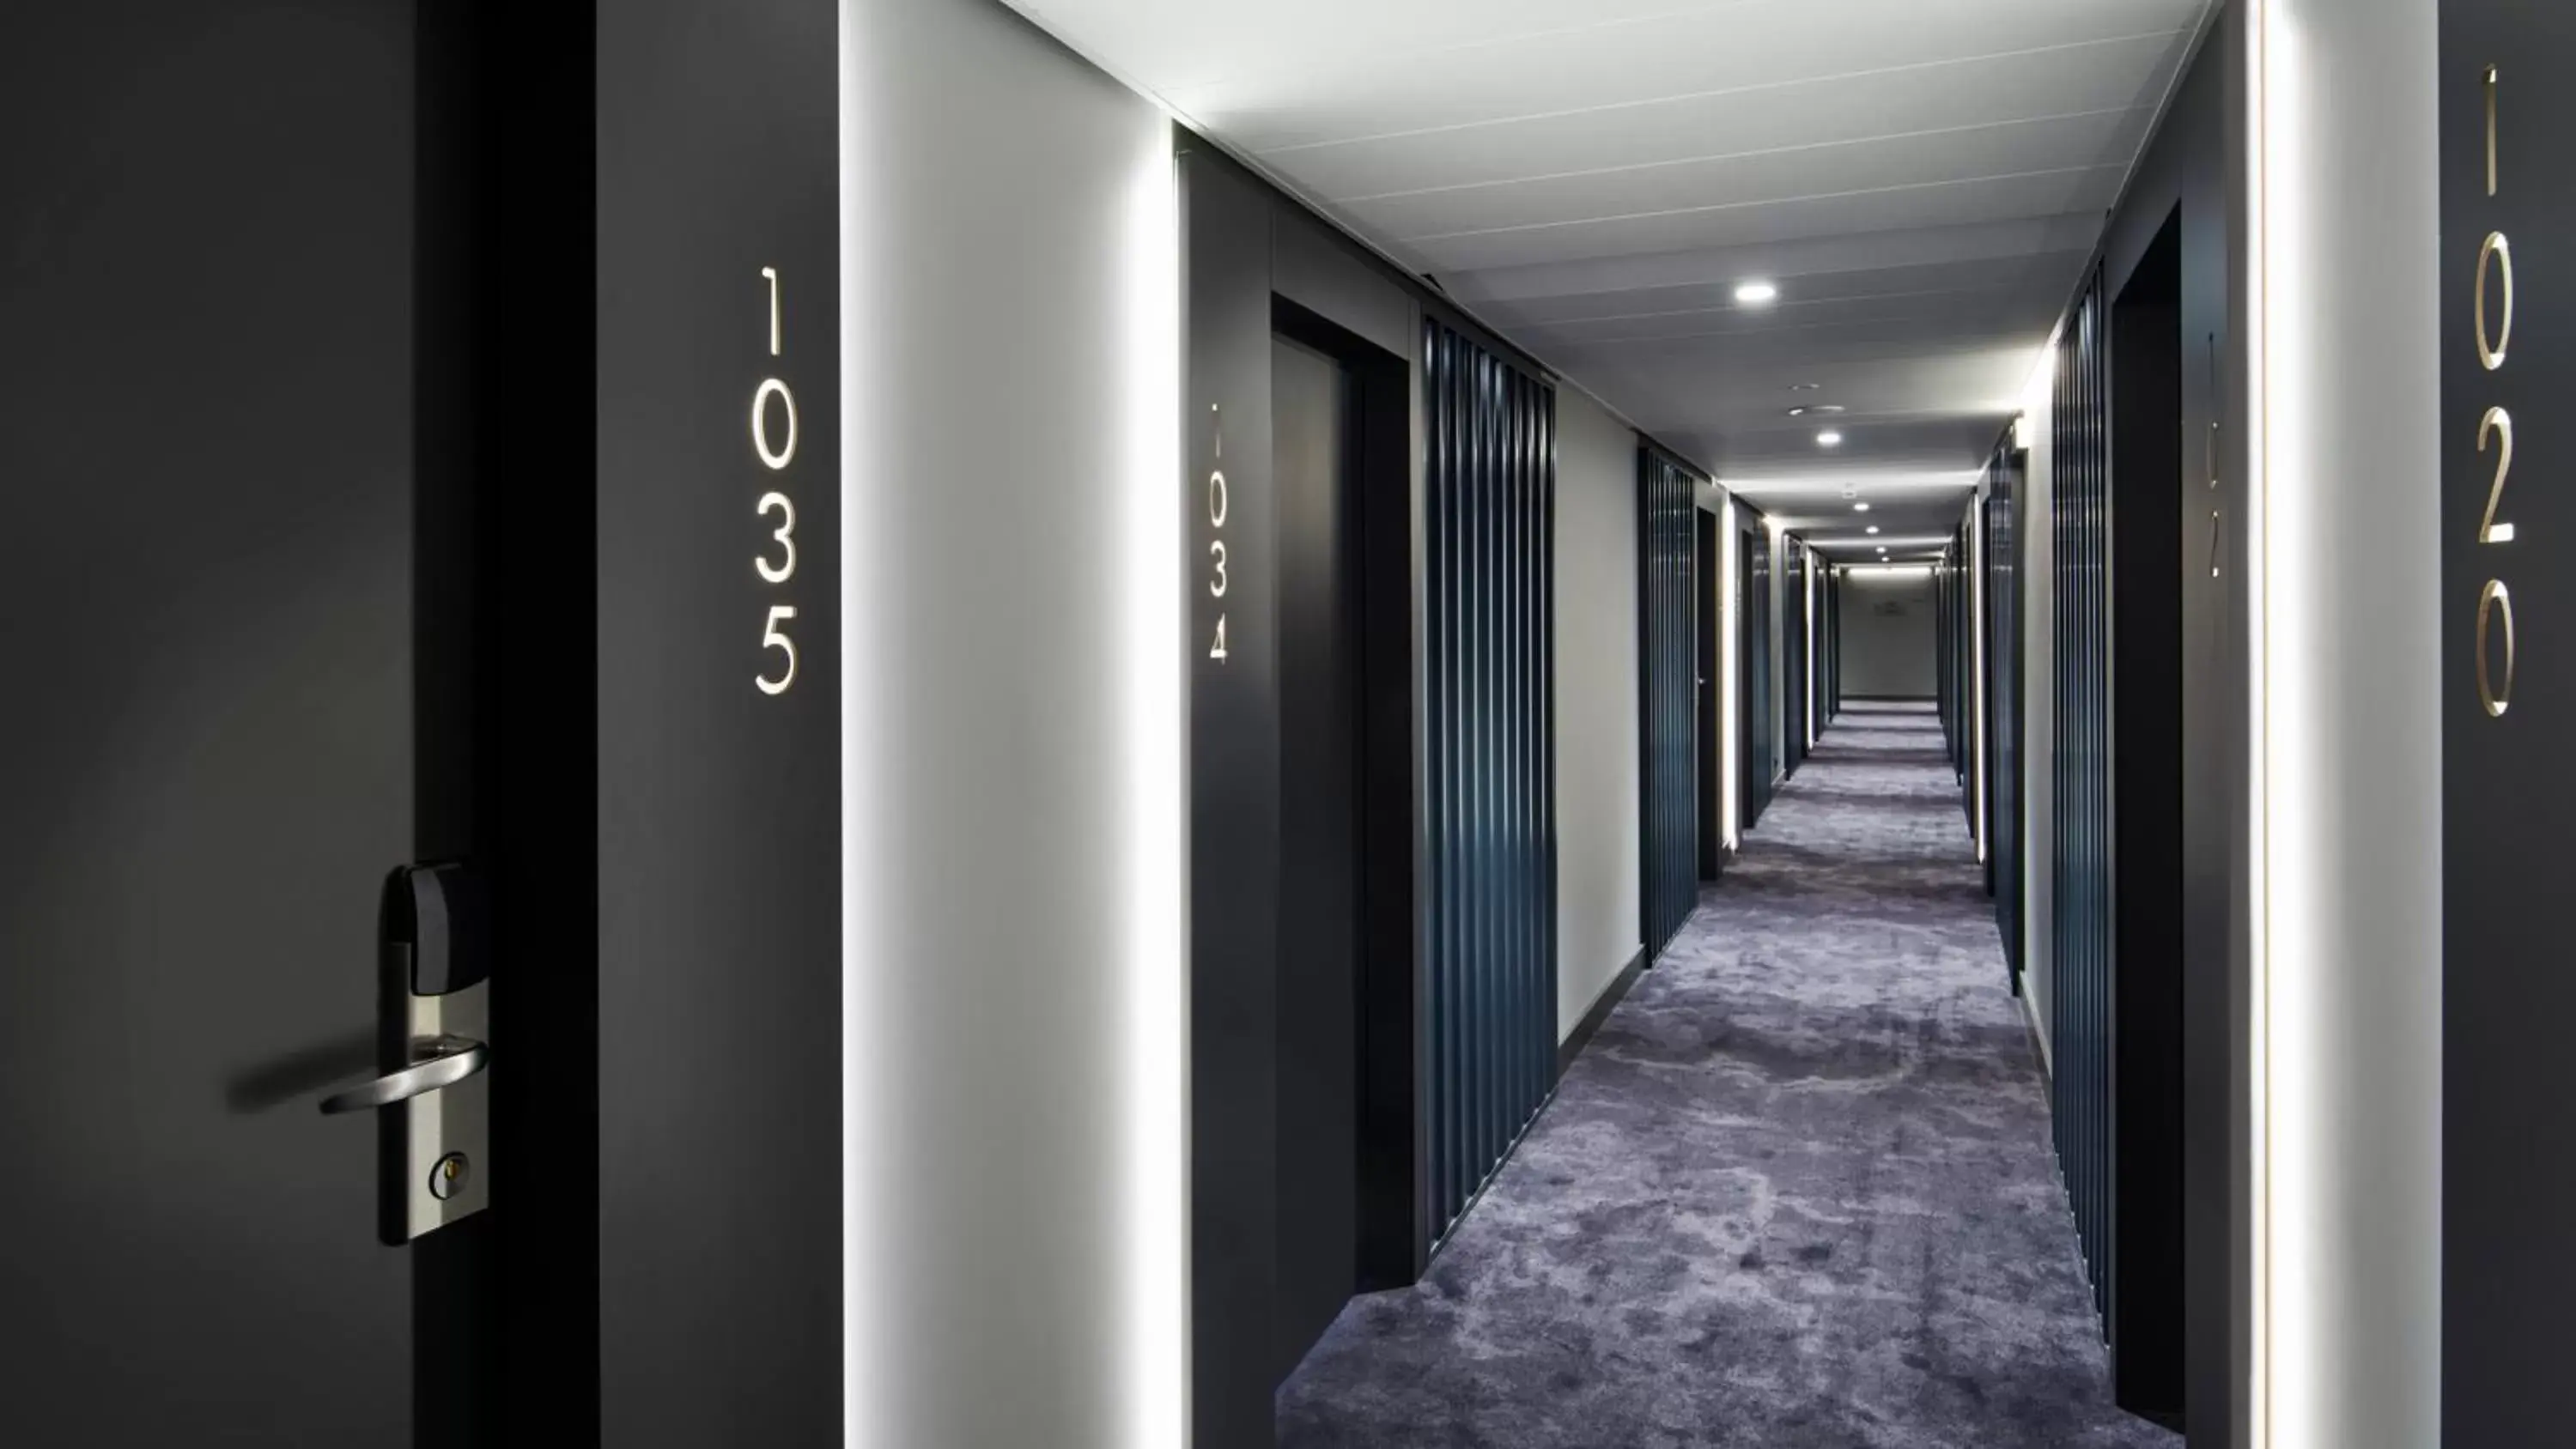 Area and facilities in OREA Congress Hotel Brno